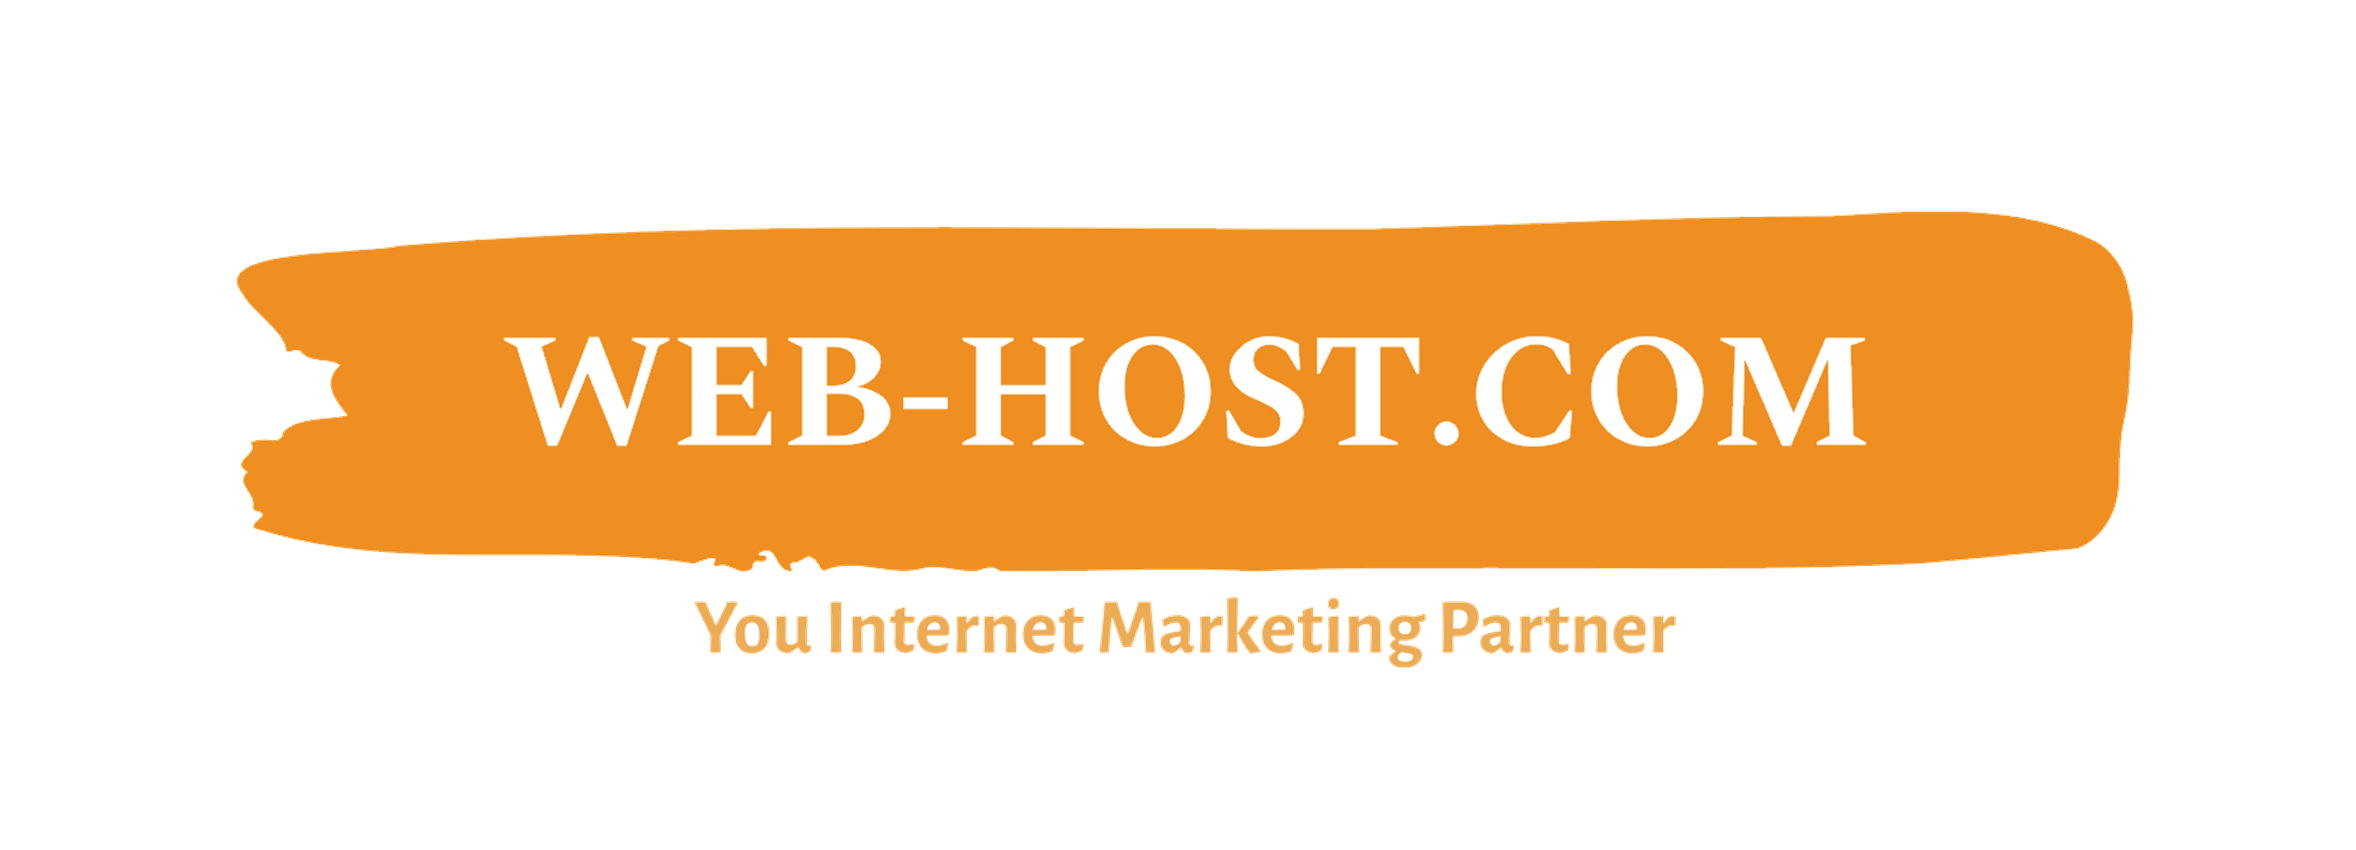 Web-Host.com